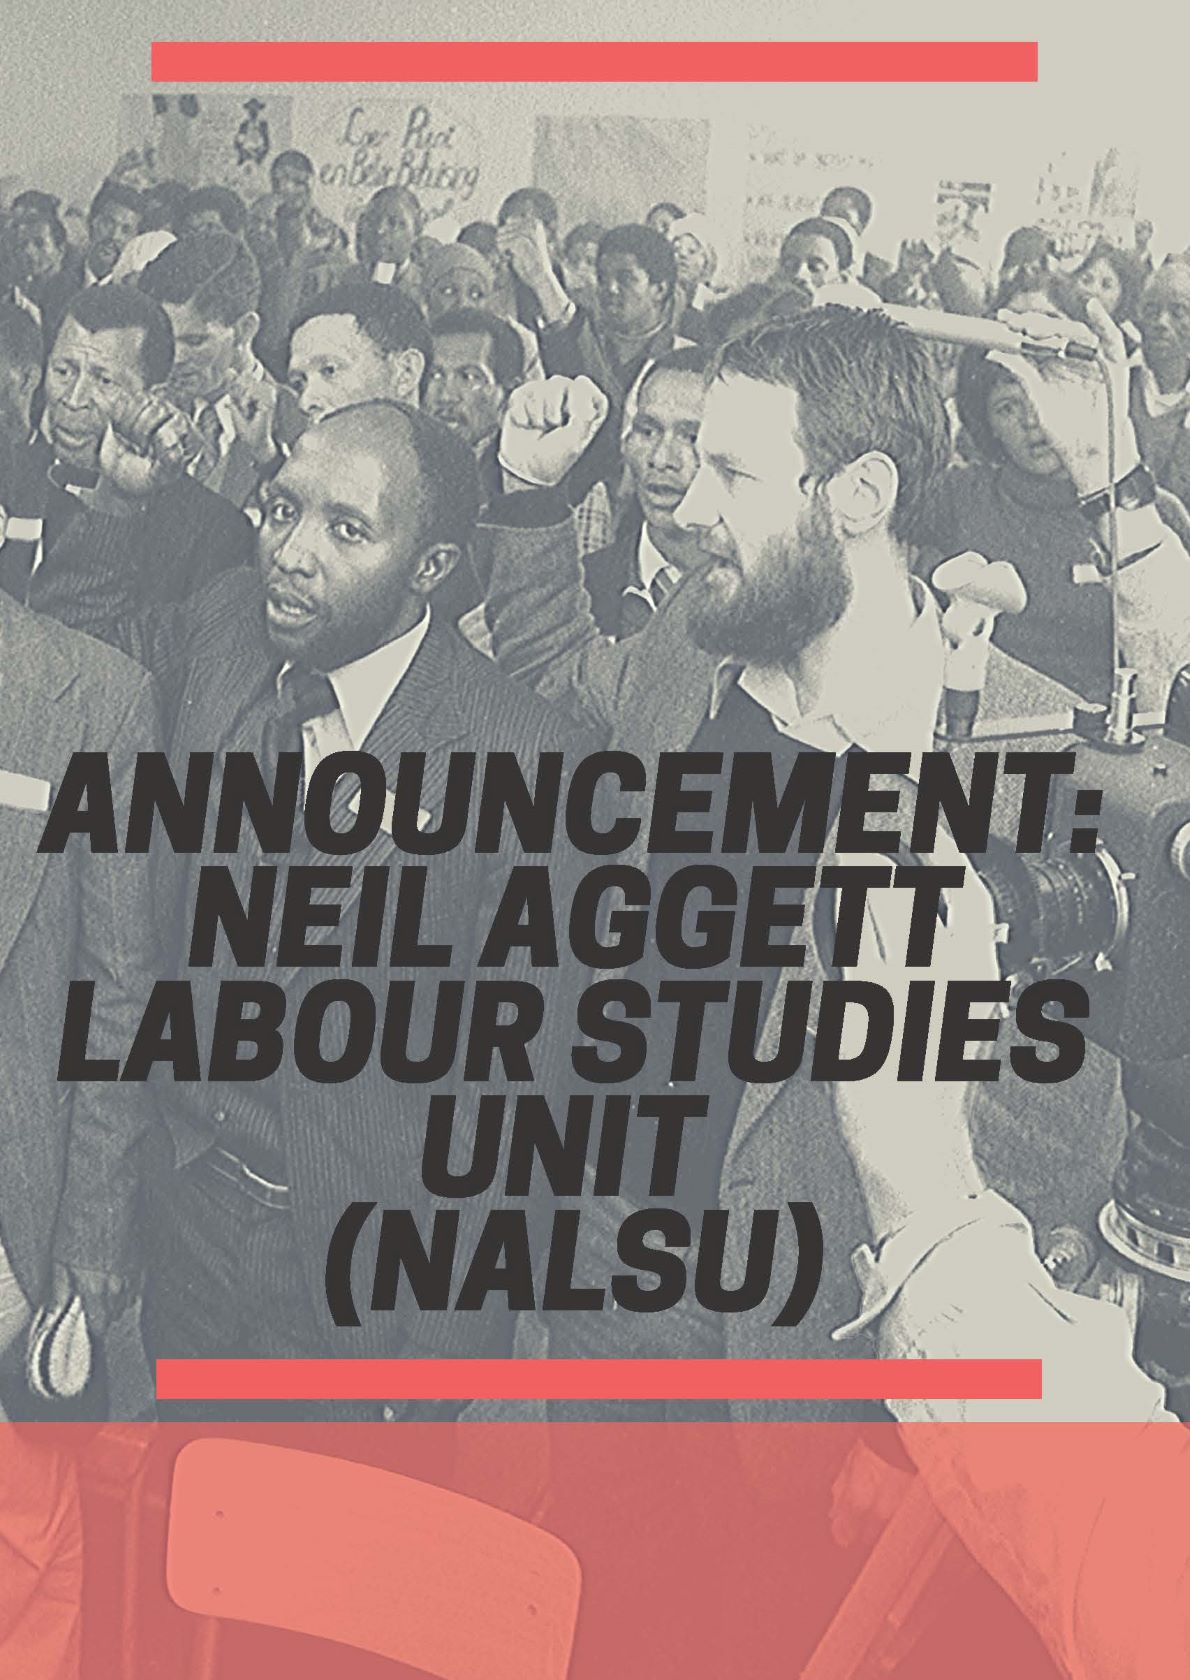 Announcement: NALSU